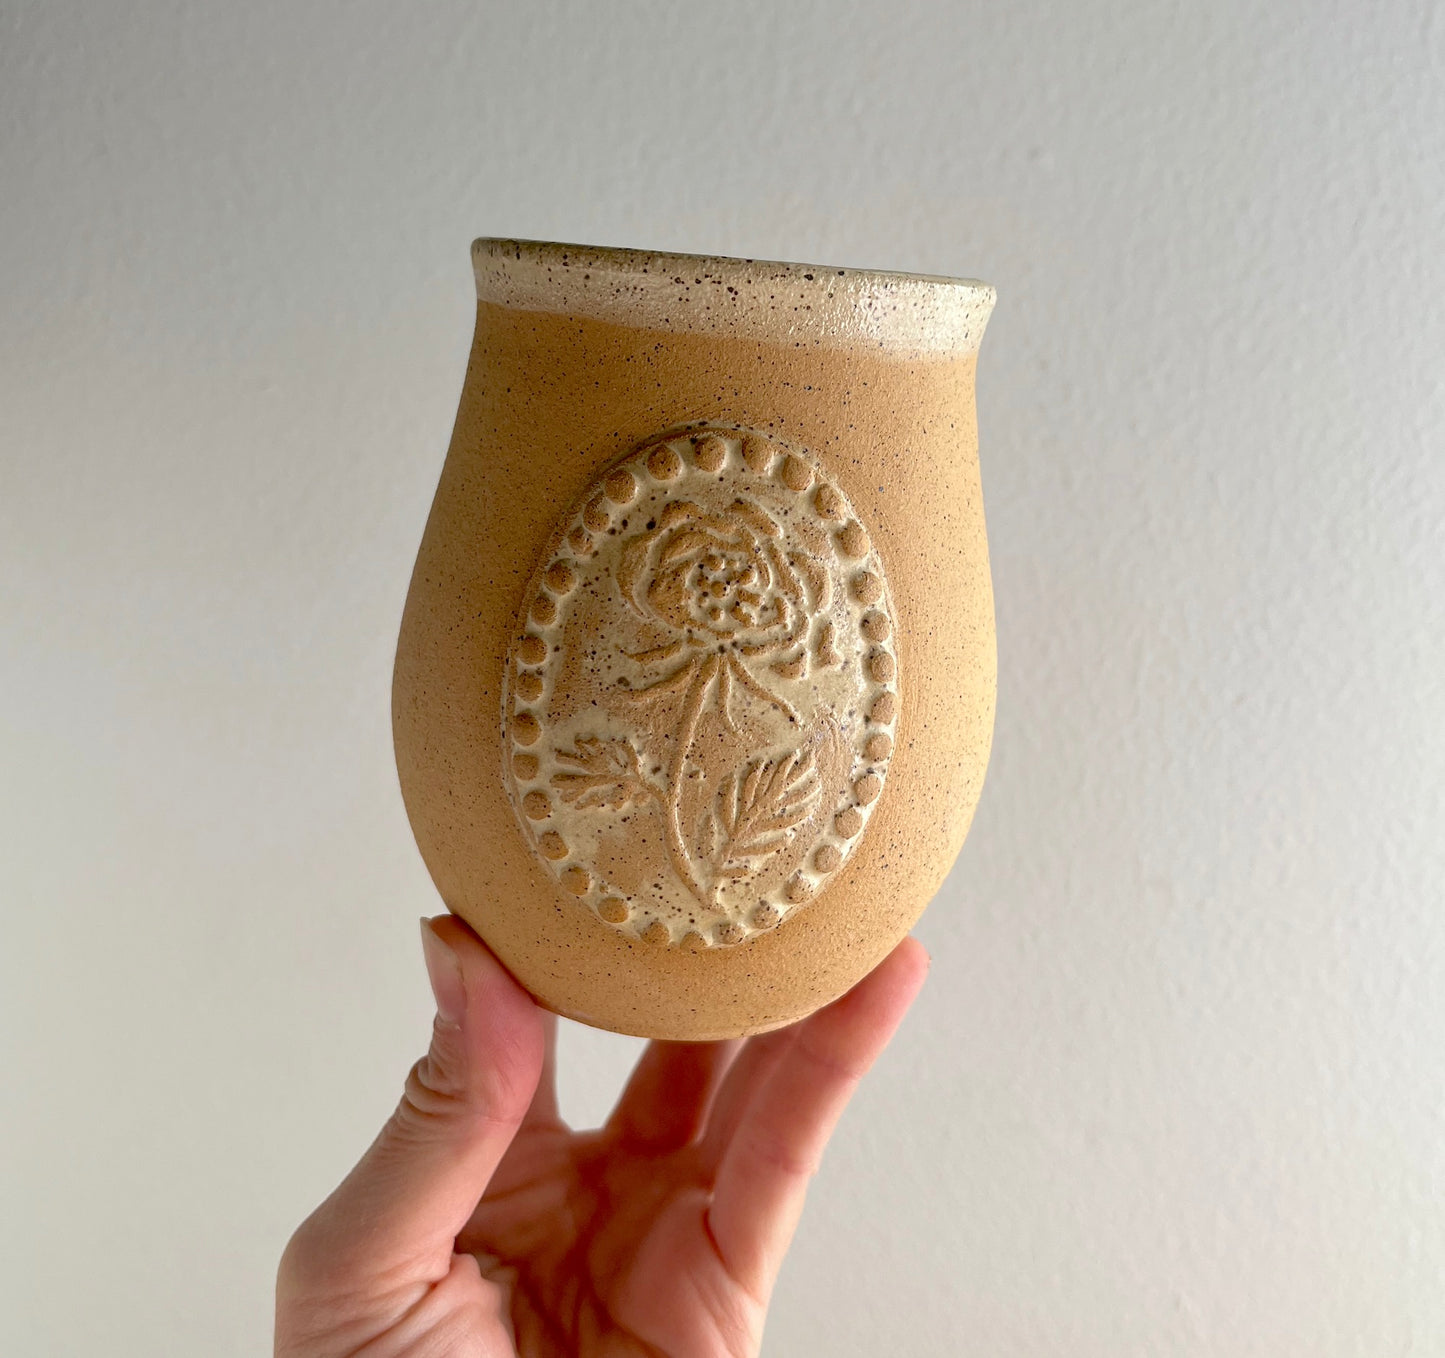 Country Rose Tumbler - Handmade Ceramic Cup